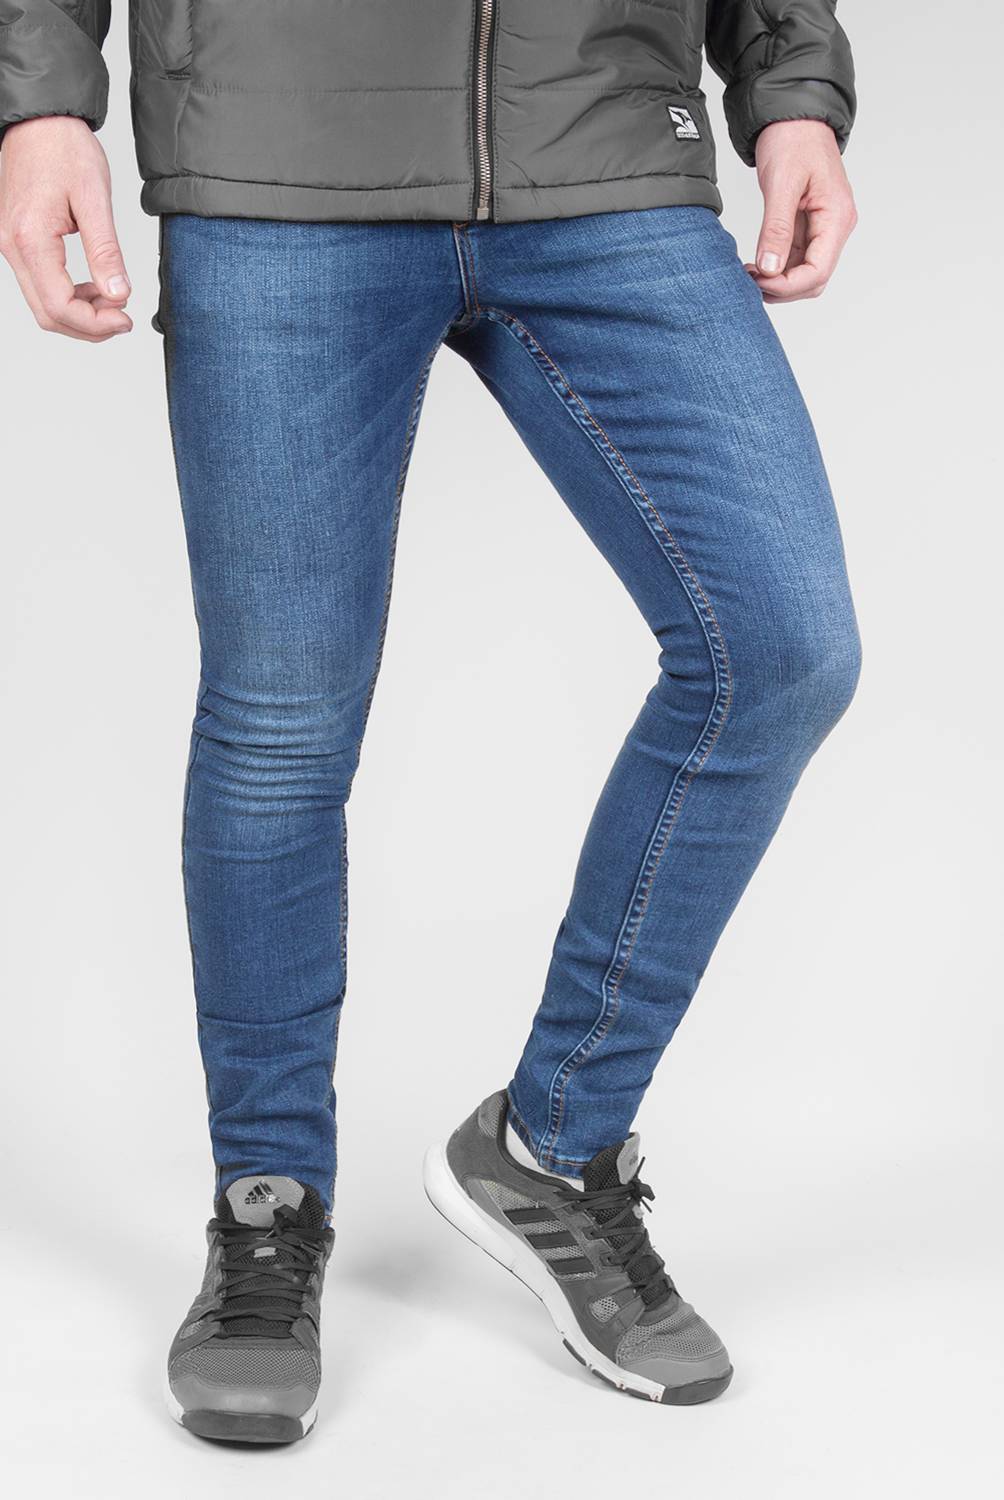 DENIMLAB - Jeans